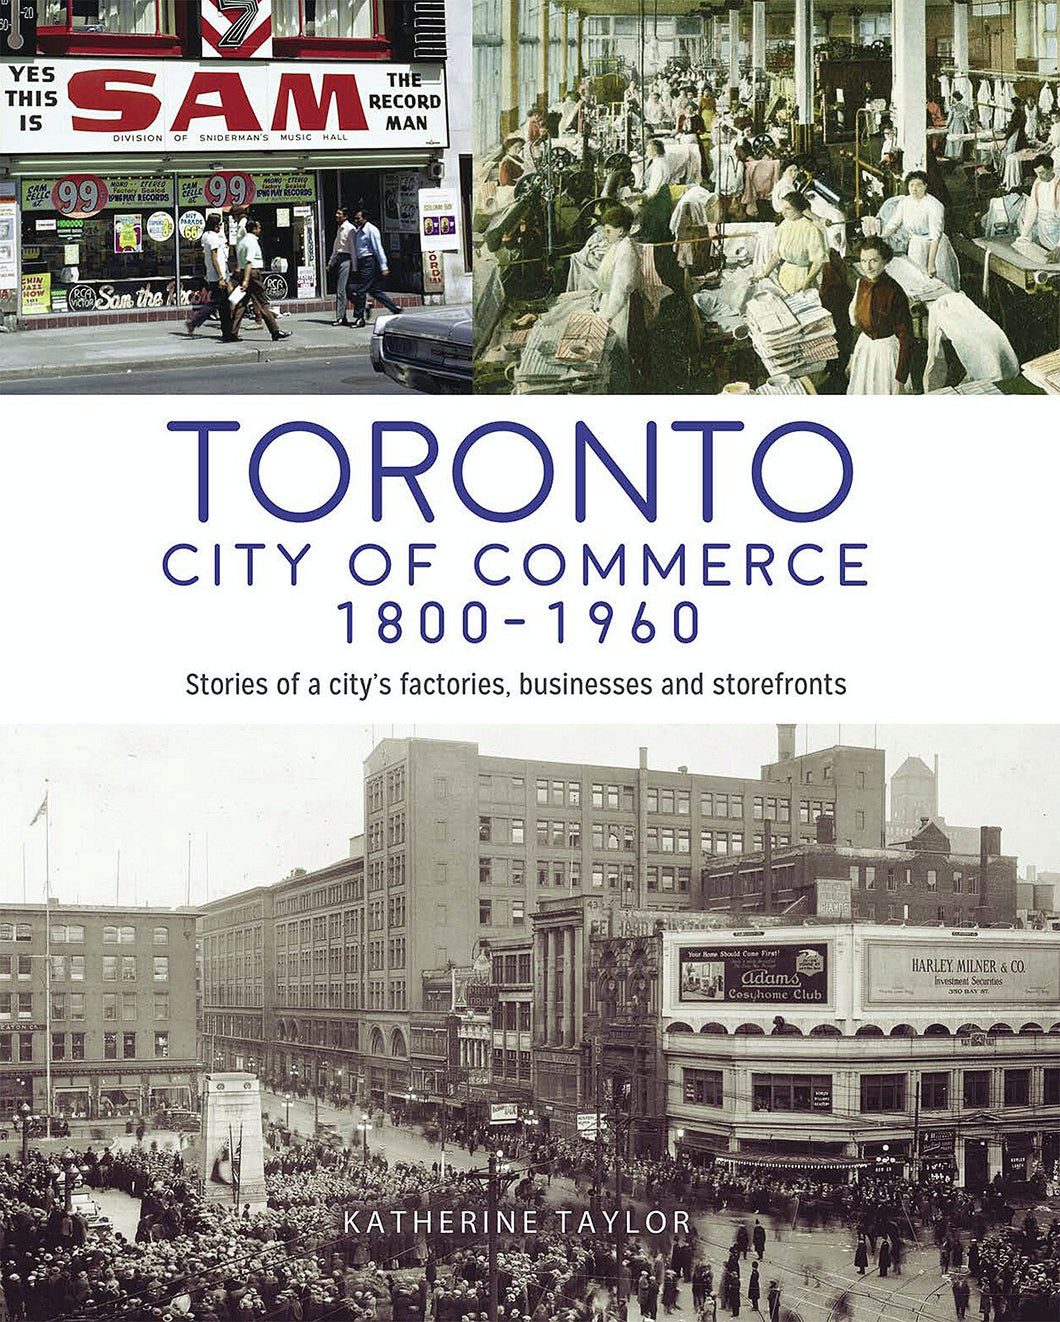 Toronto: City of Commerce 1800-1960